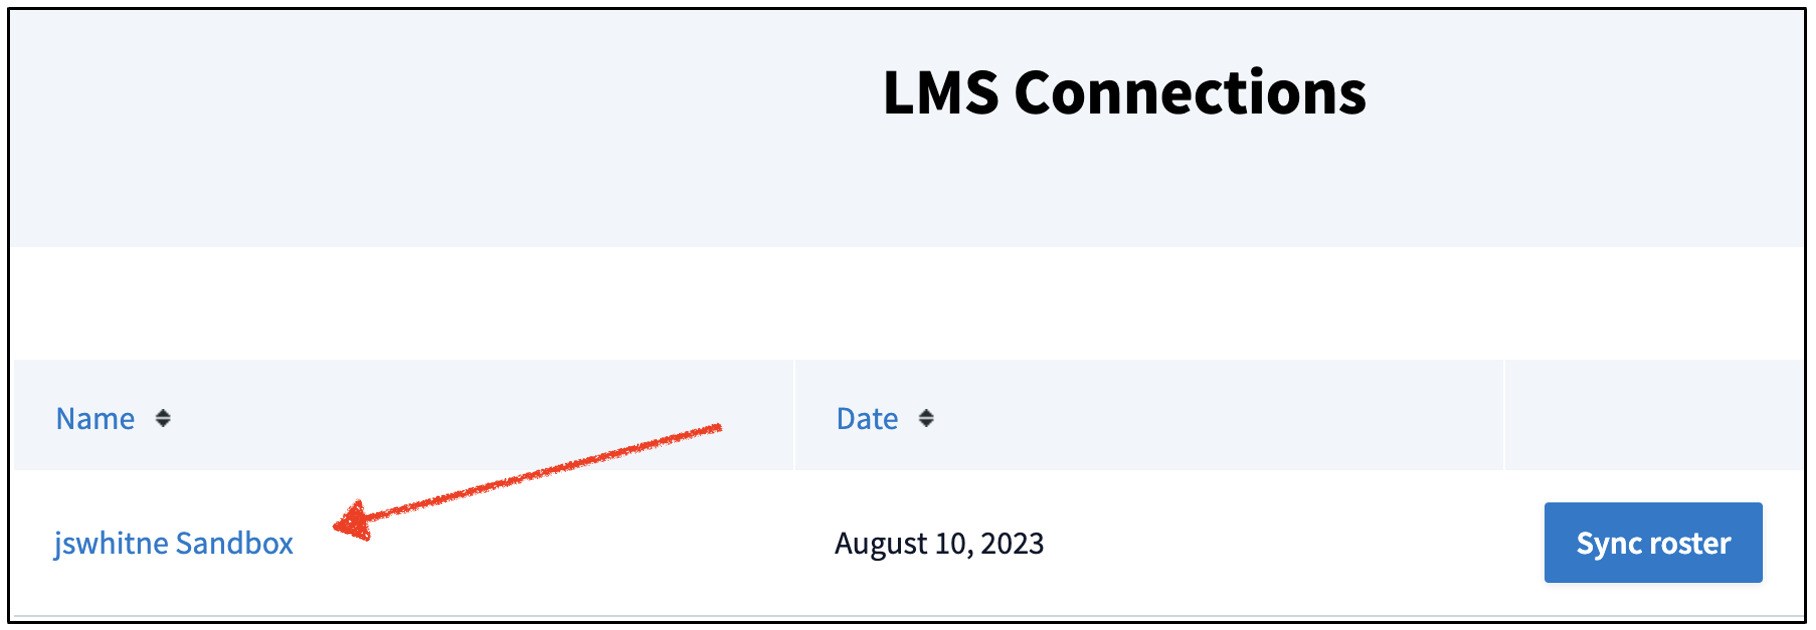 LMS connections menu